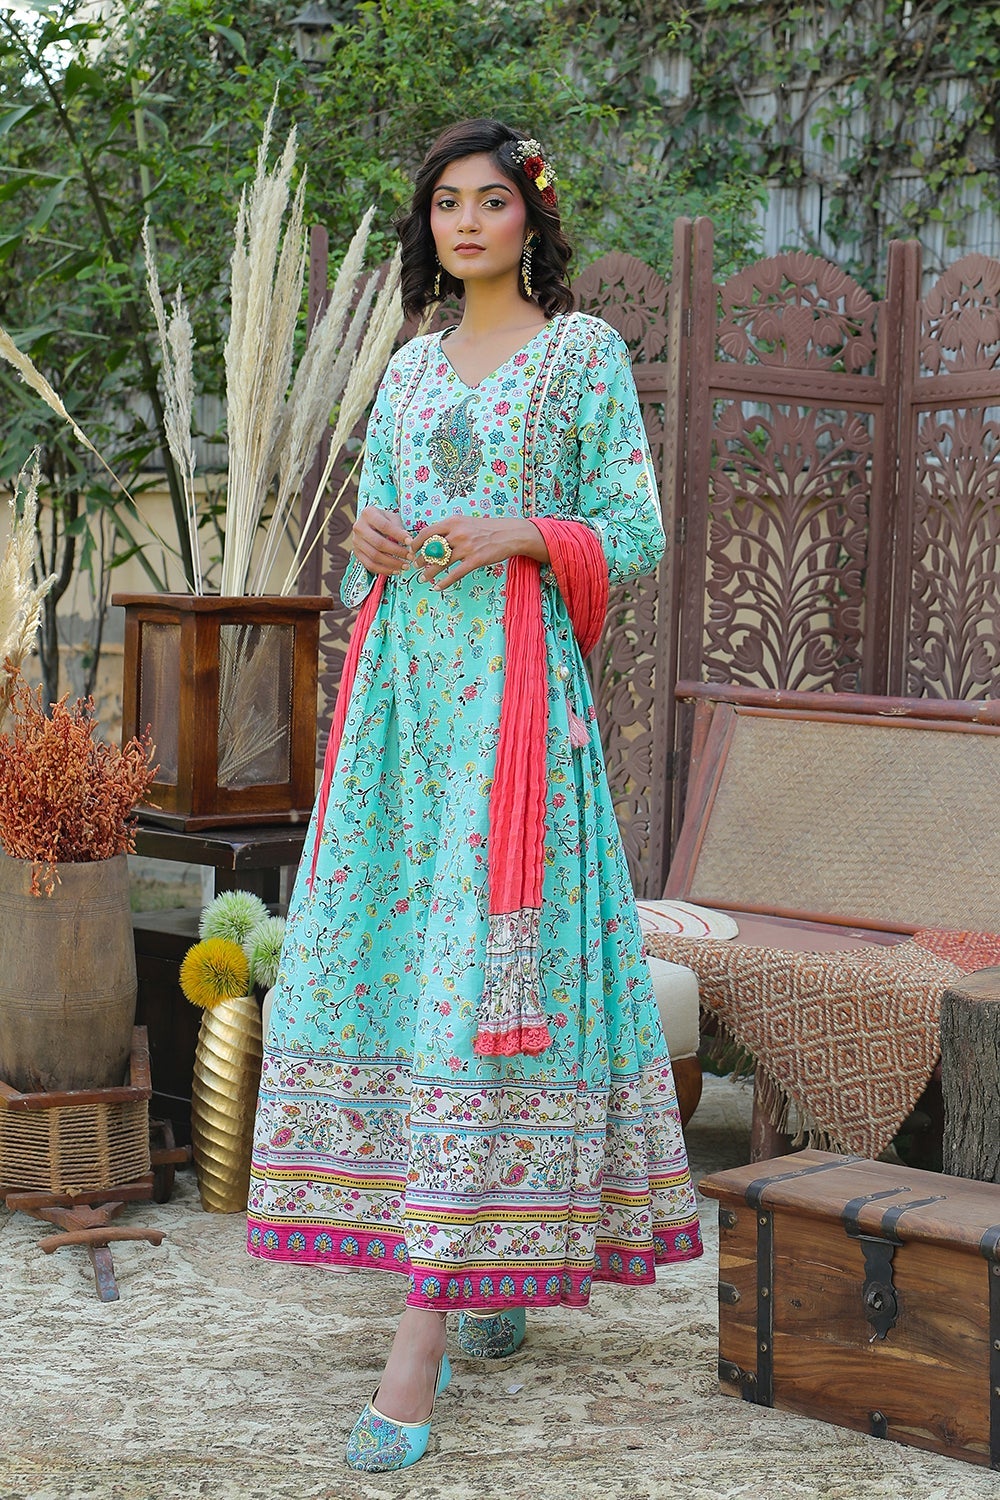 Juniper Aqua Floral Printed Anarkali Lacy Dress & Contrast Dupatta With Side Dori Tie-Up & Tassels At Waist